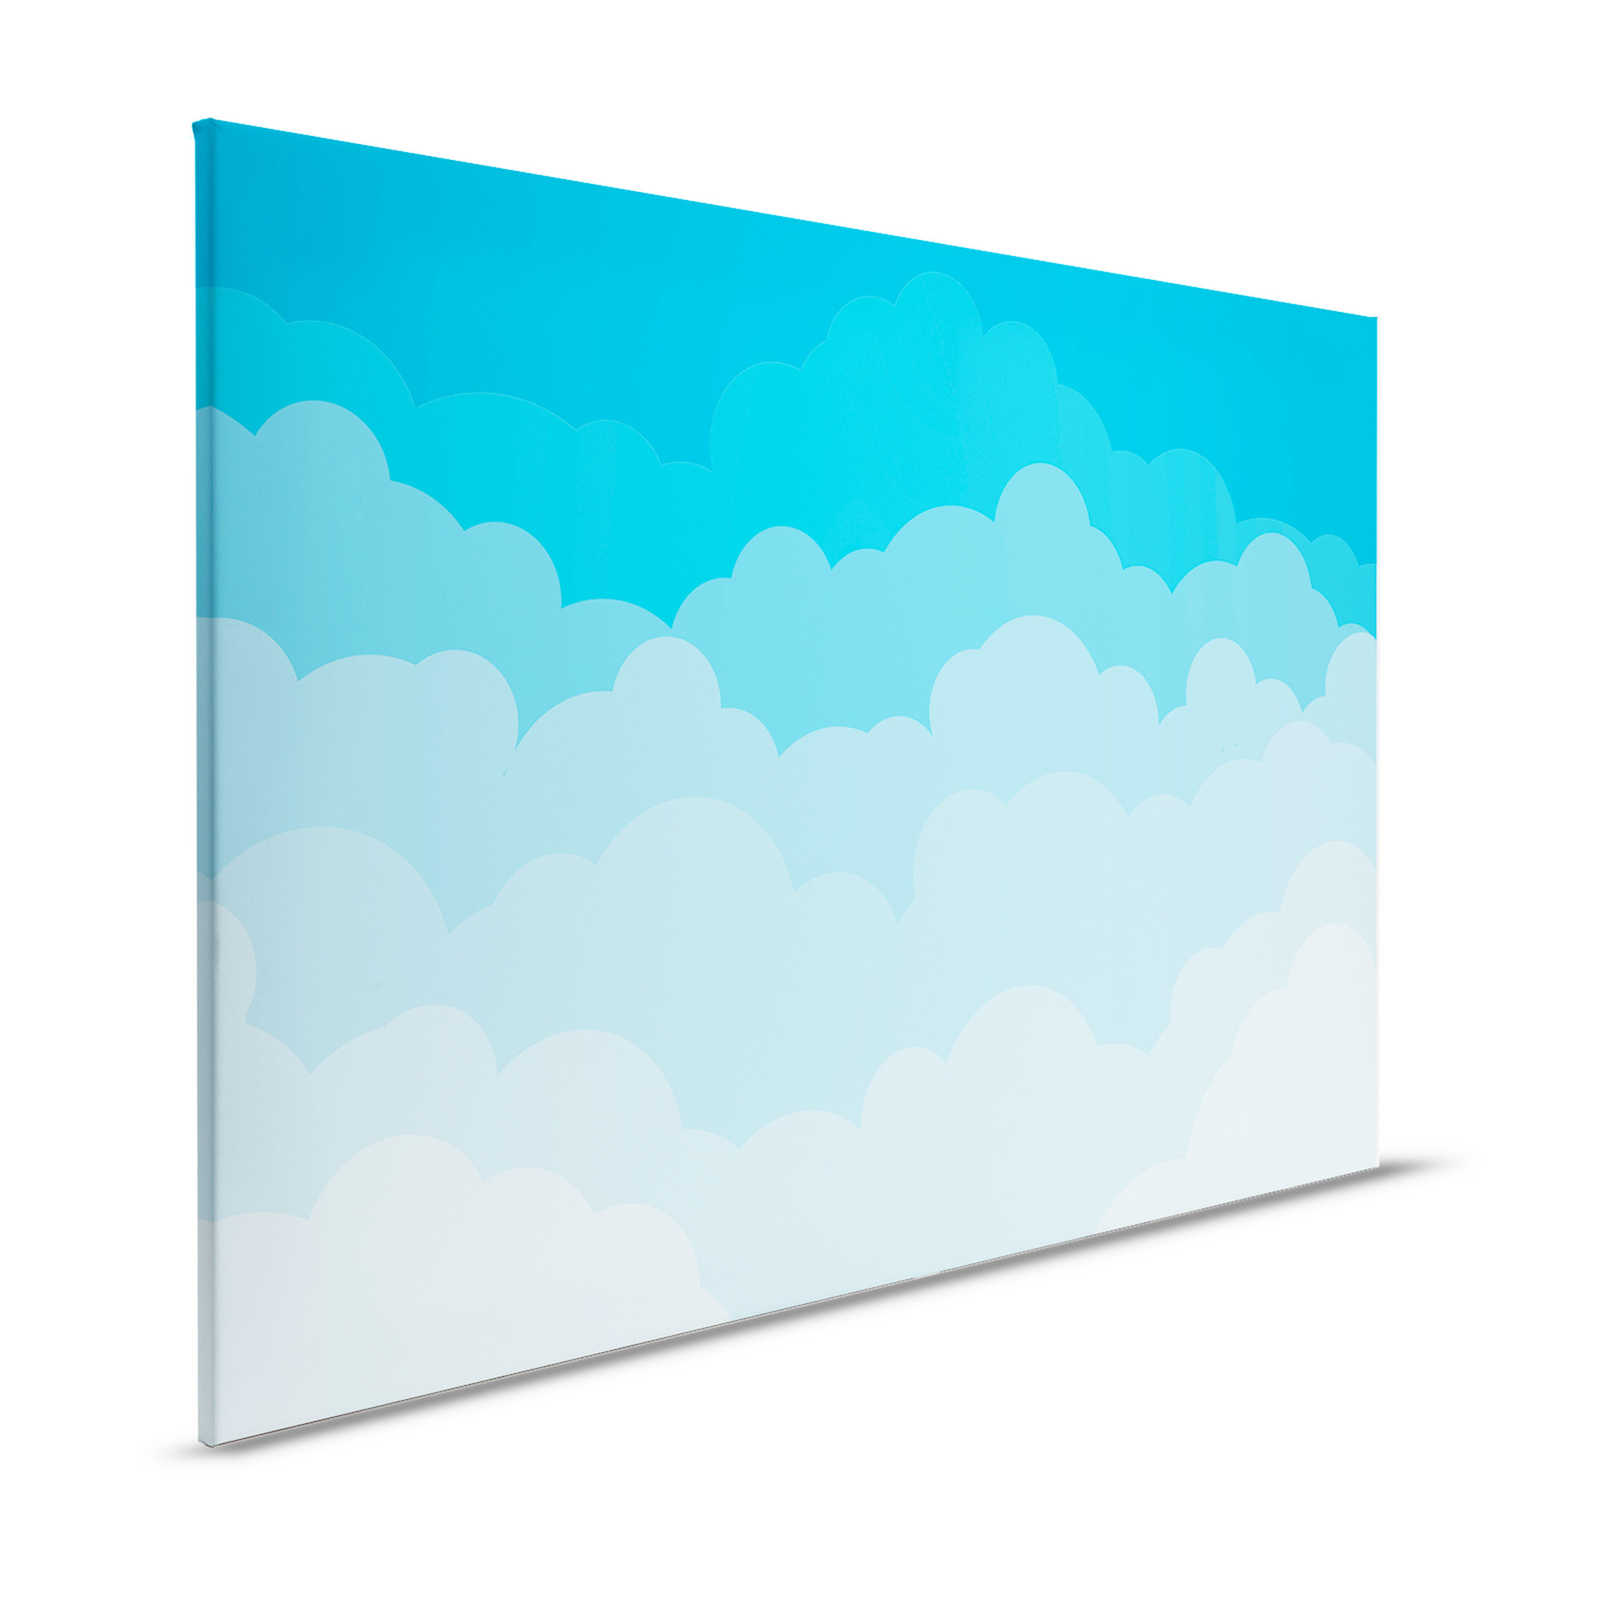 Lienzo Cielo con nubes en estilo cómic - 120 cm x 80 cm
